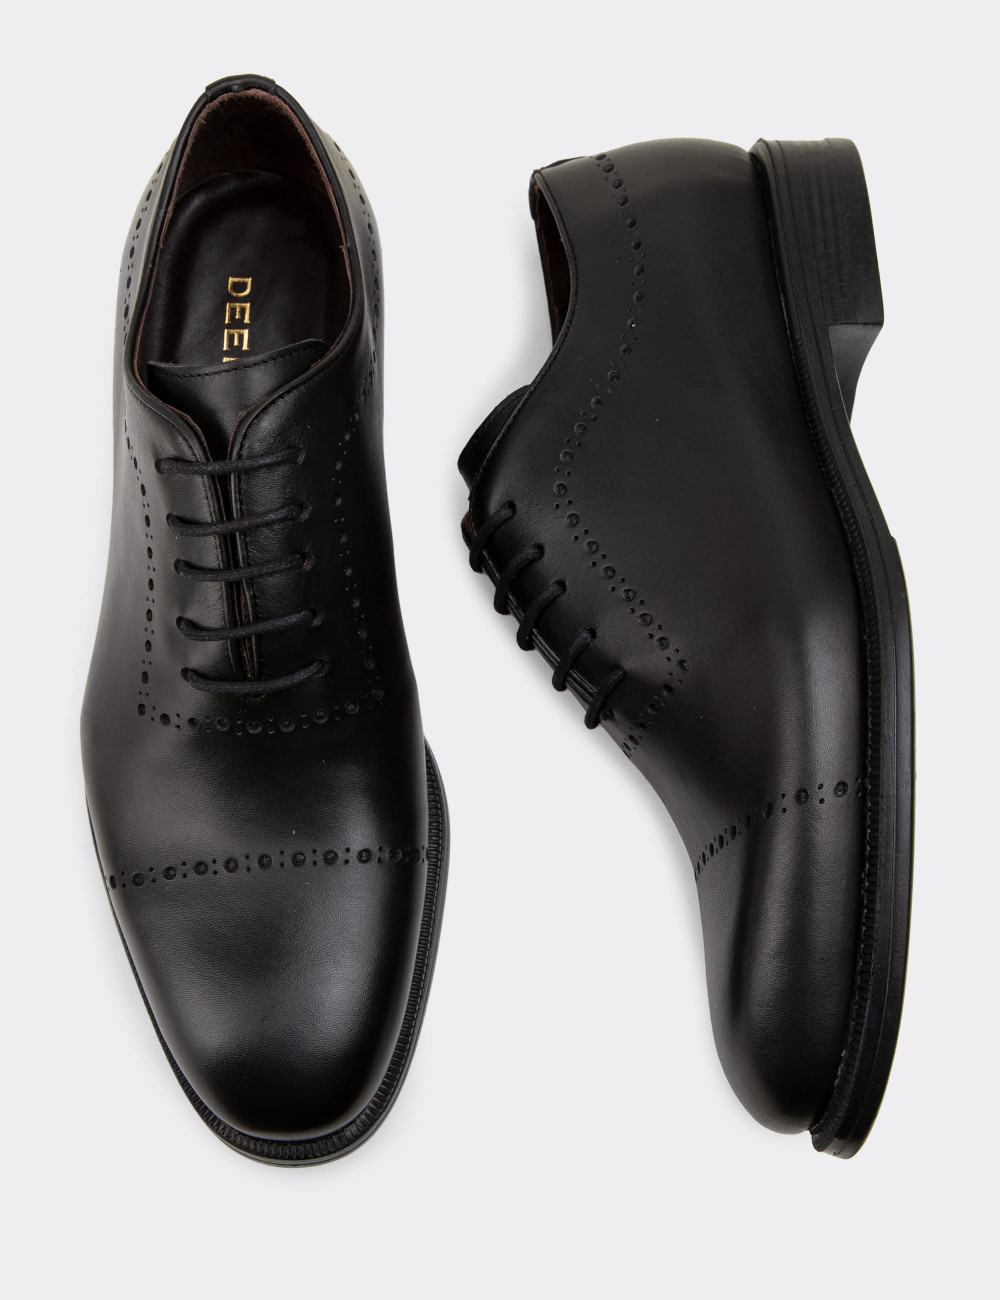 Hakiki Deri Siyah Klasik Erkek Ayakkabı - 00491MSYHC02